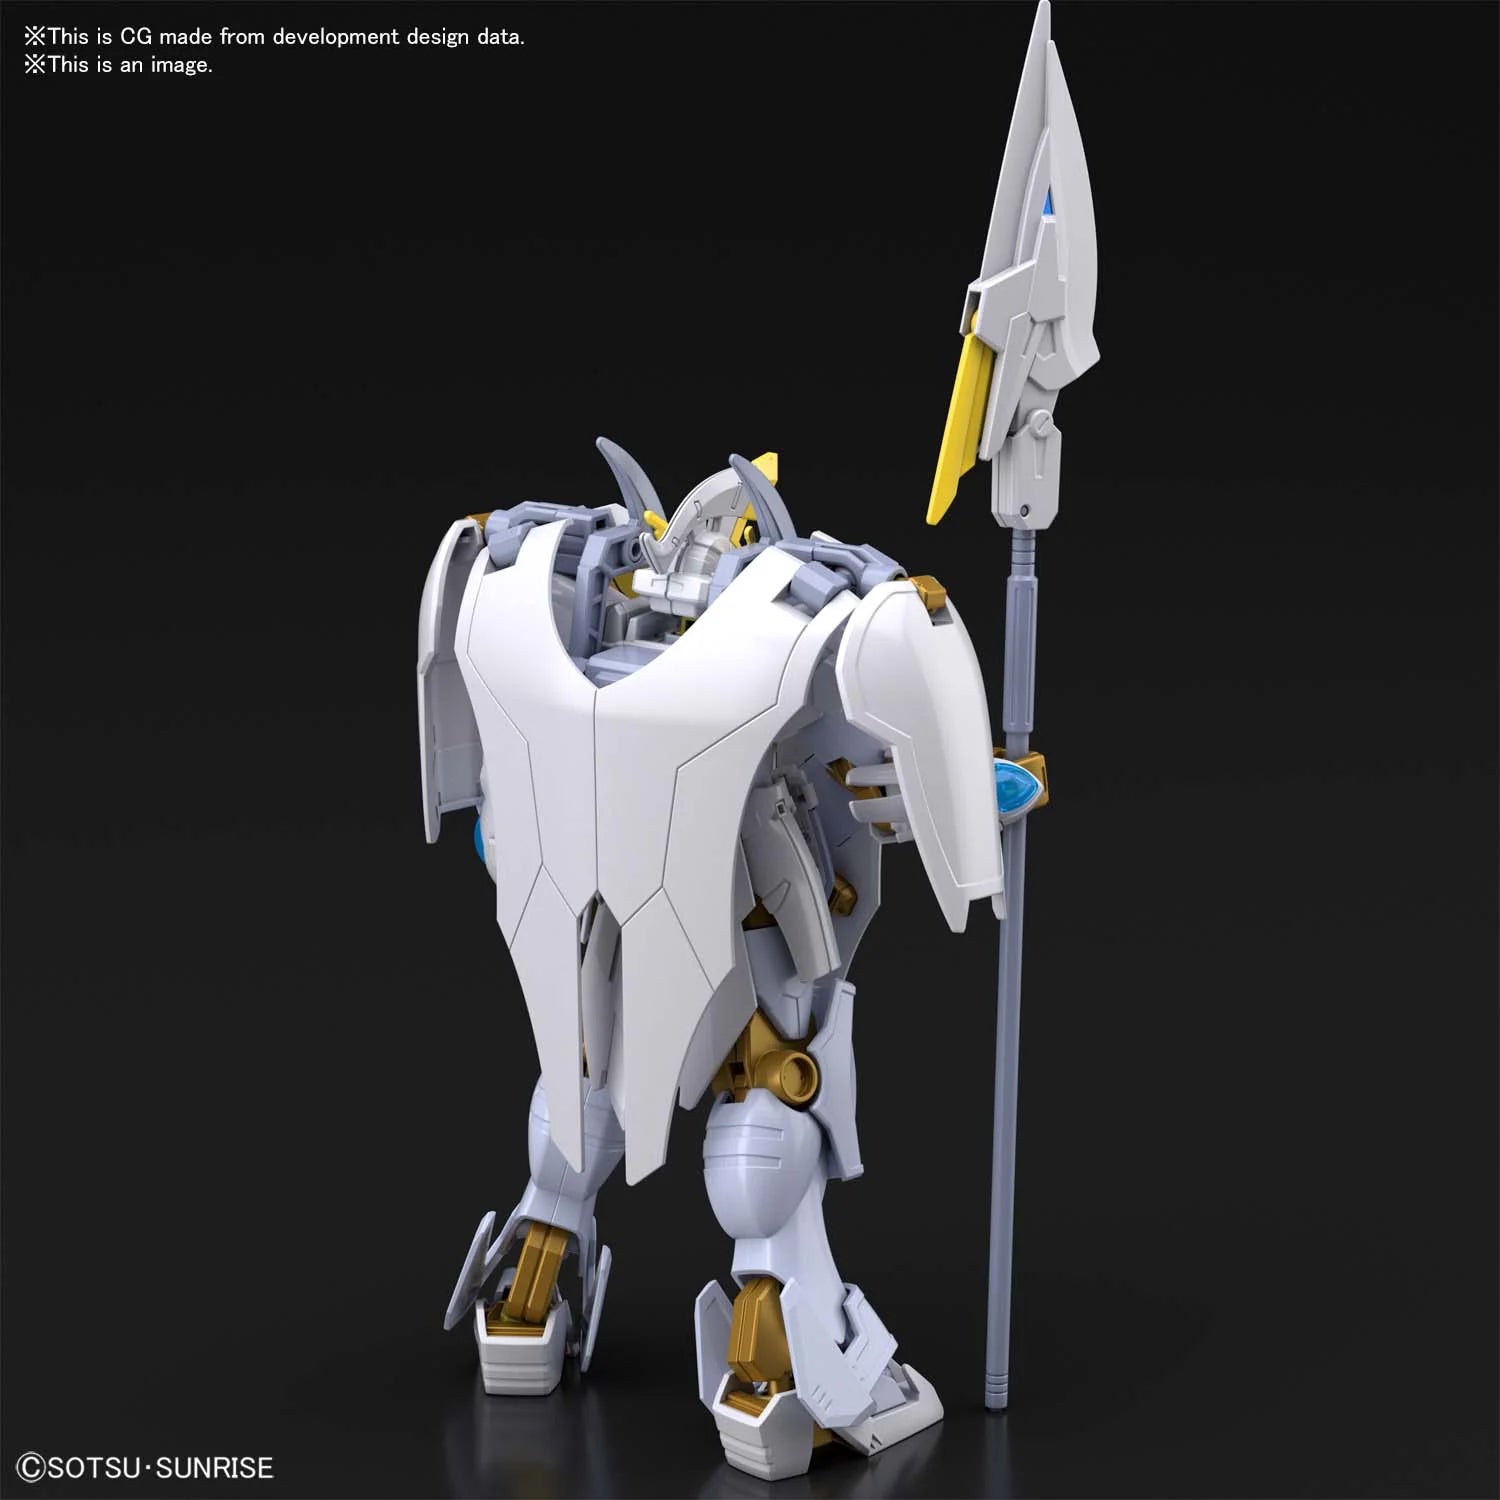 HG Battlogue 1/144 Gundam Livelance Heaven